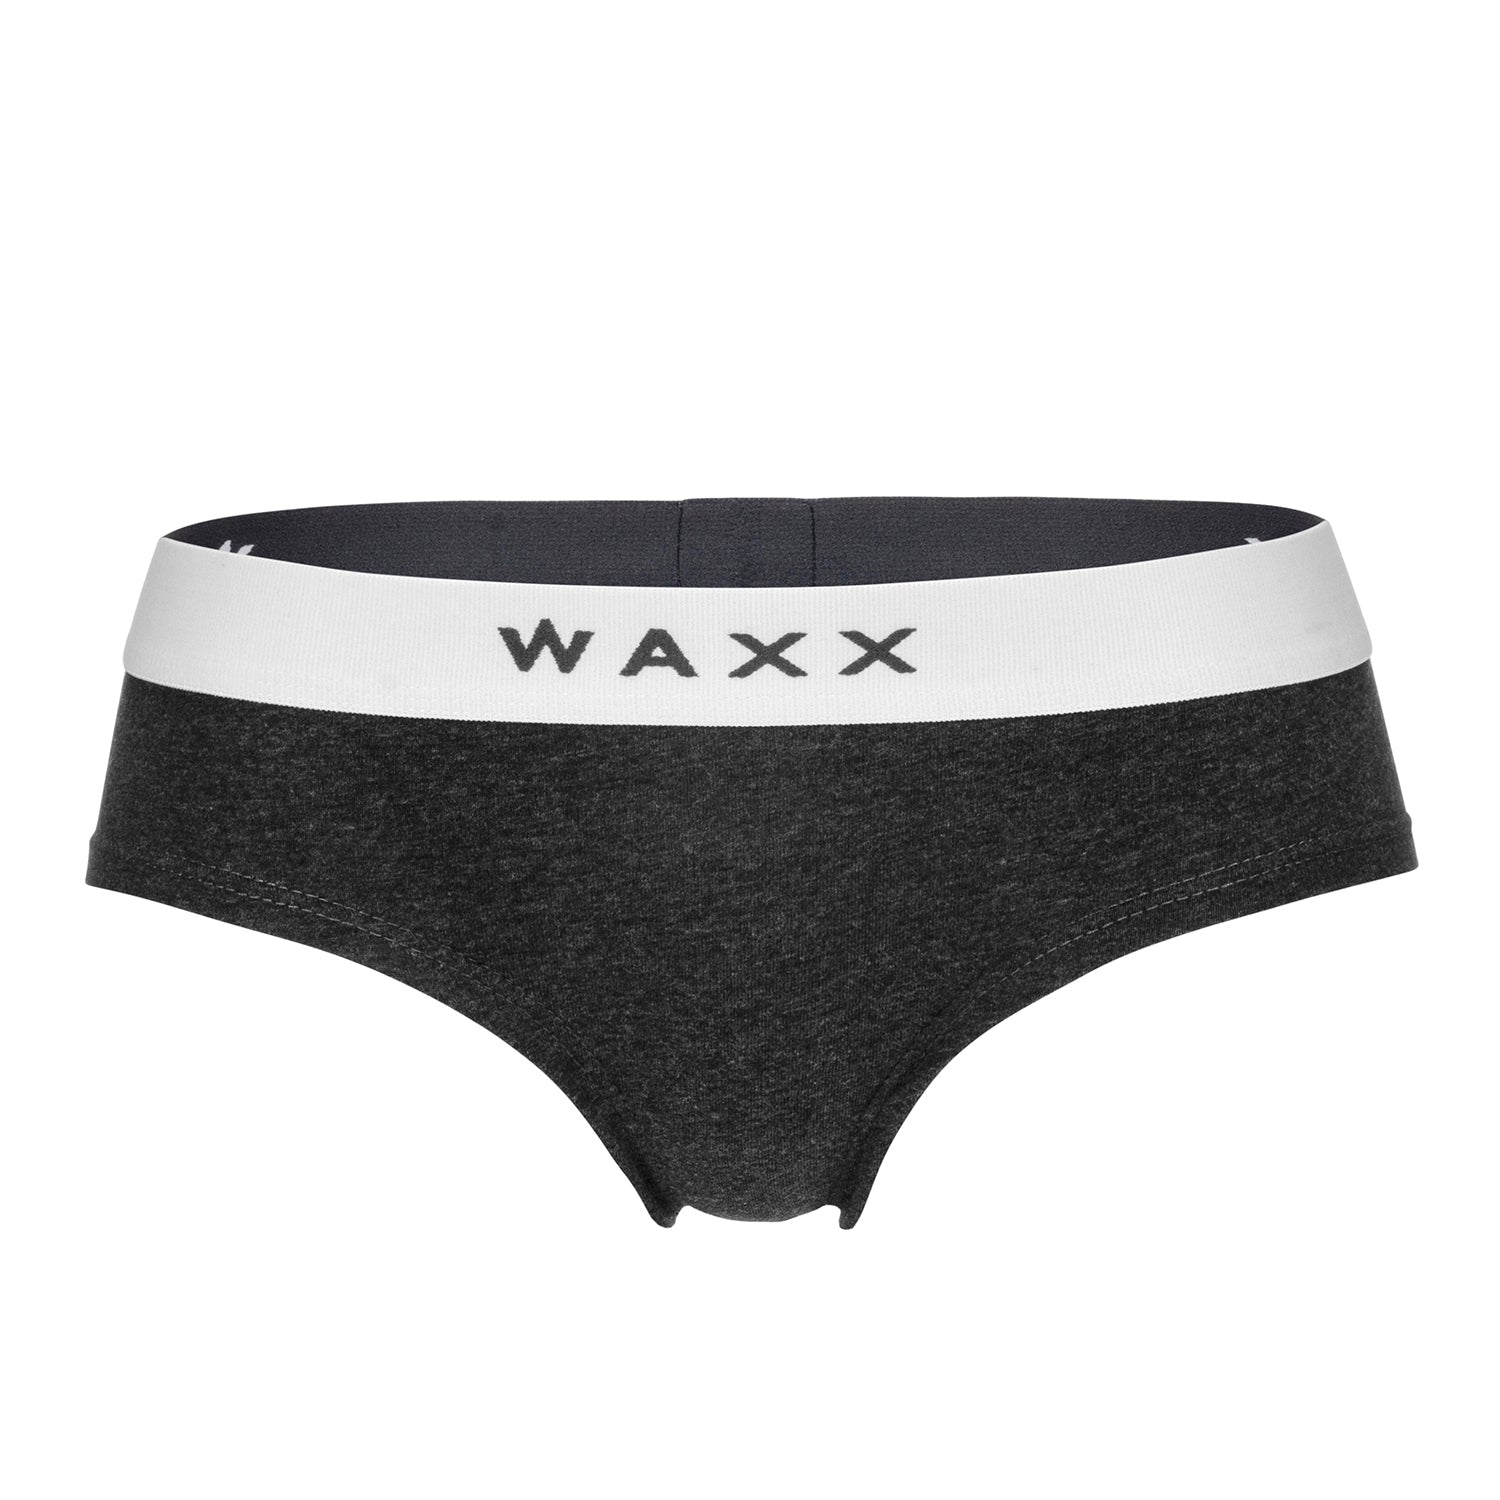 Waxx Ladies Cotton Boy Short Anthracite